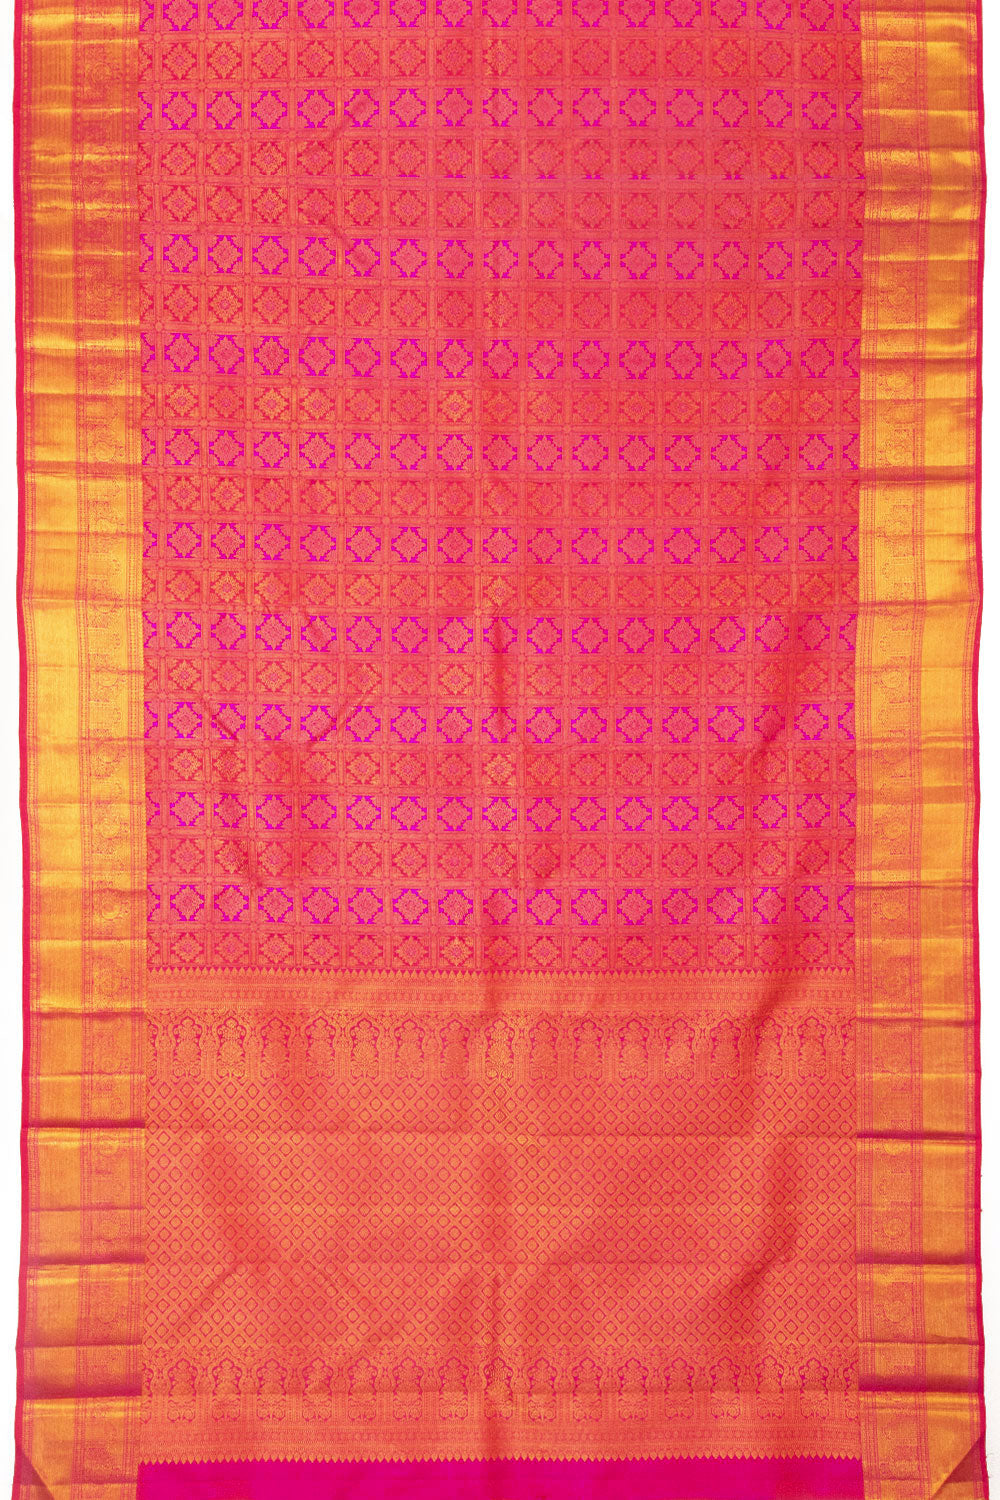 Dual Tone Pink Bridal Kanjivaram Silk Saree - Avishya